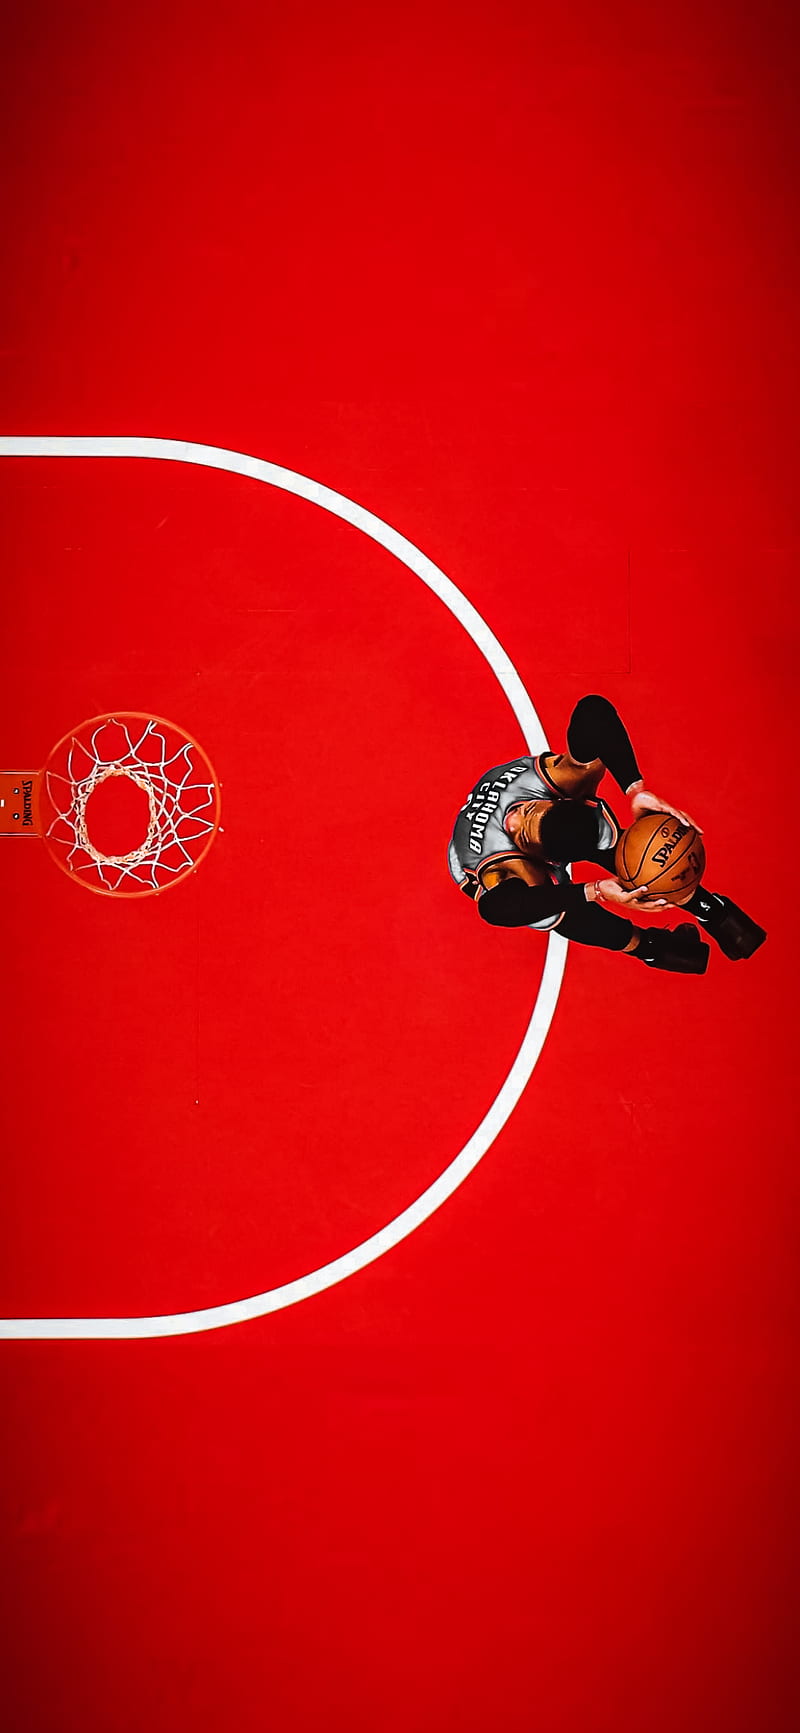 Russel westbrook, basketball, dunk, hooper, nba, oklahoma, russ, HD phone wallpaper